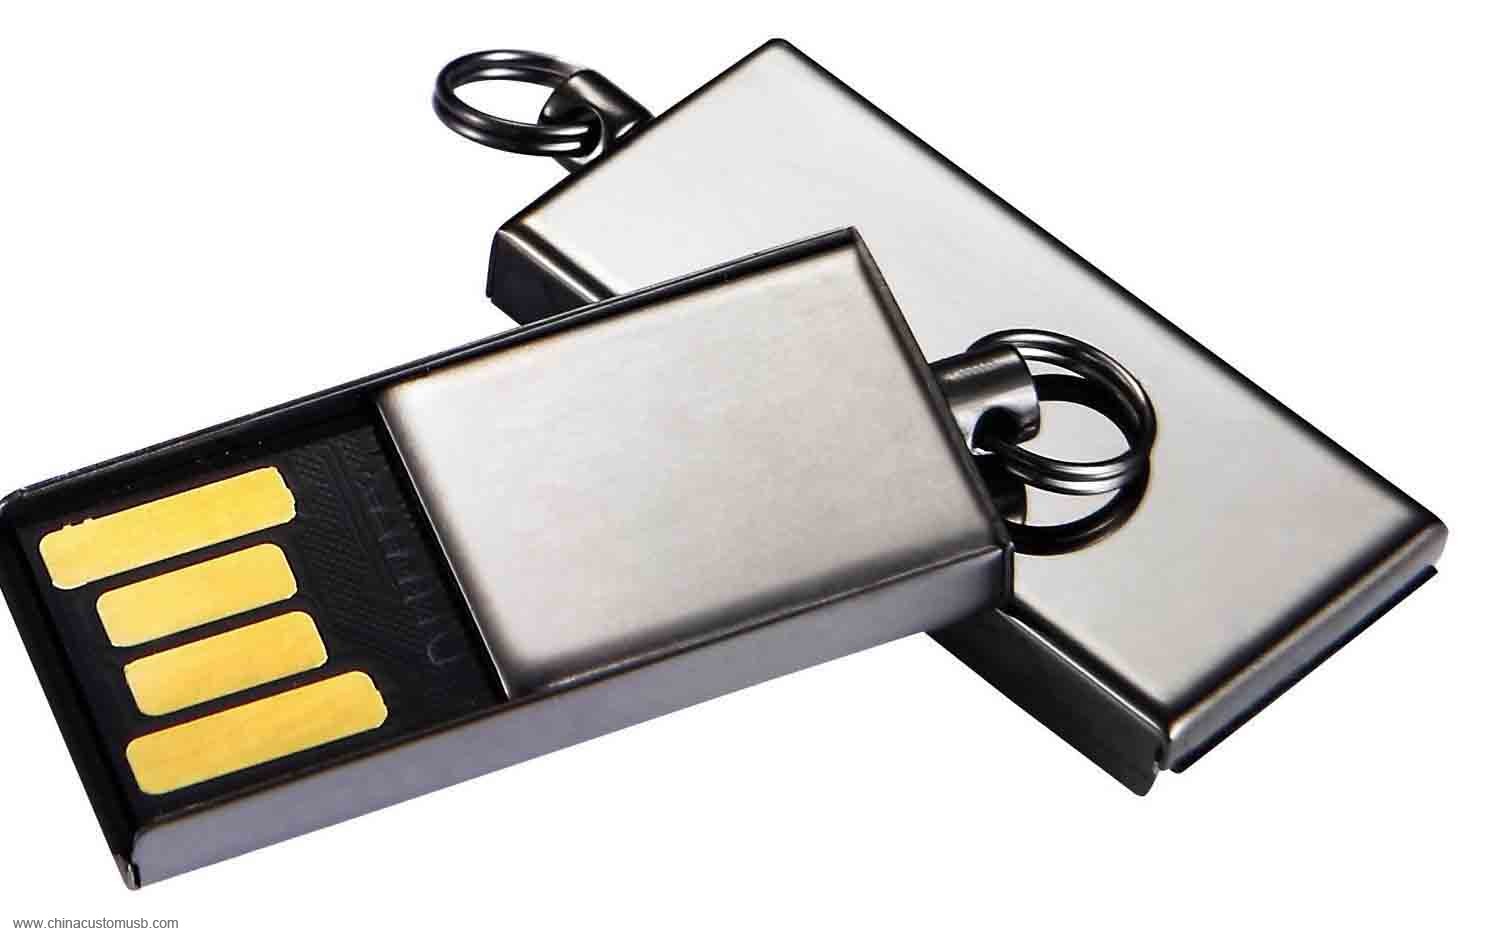 Μεταλλικό Απλό USB Flash Δίσκο 4